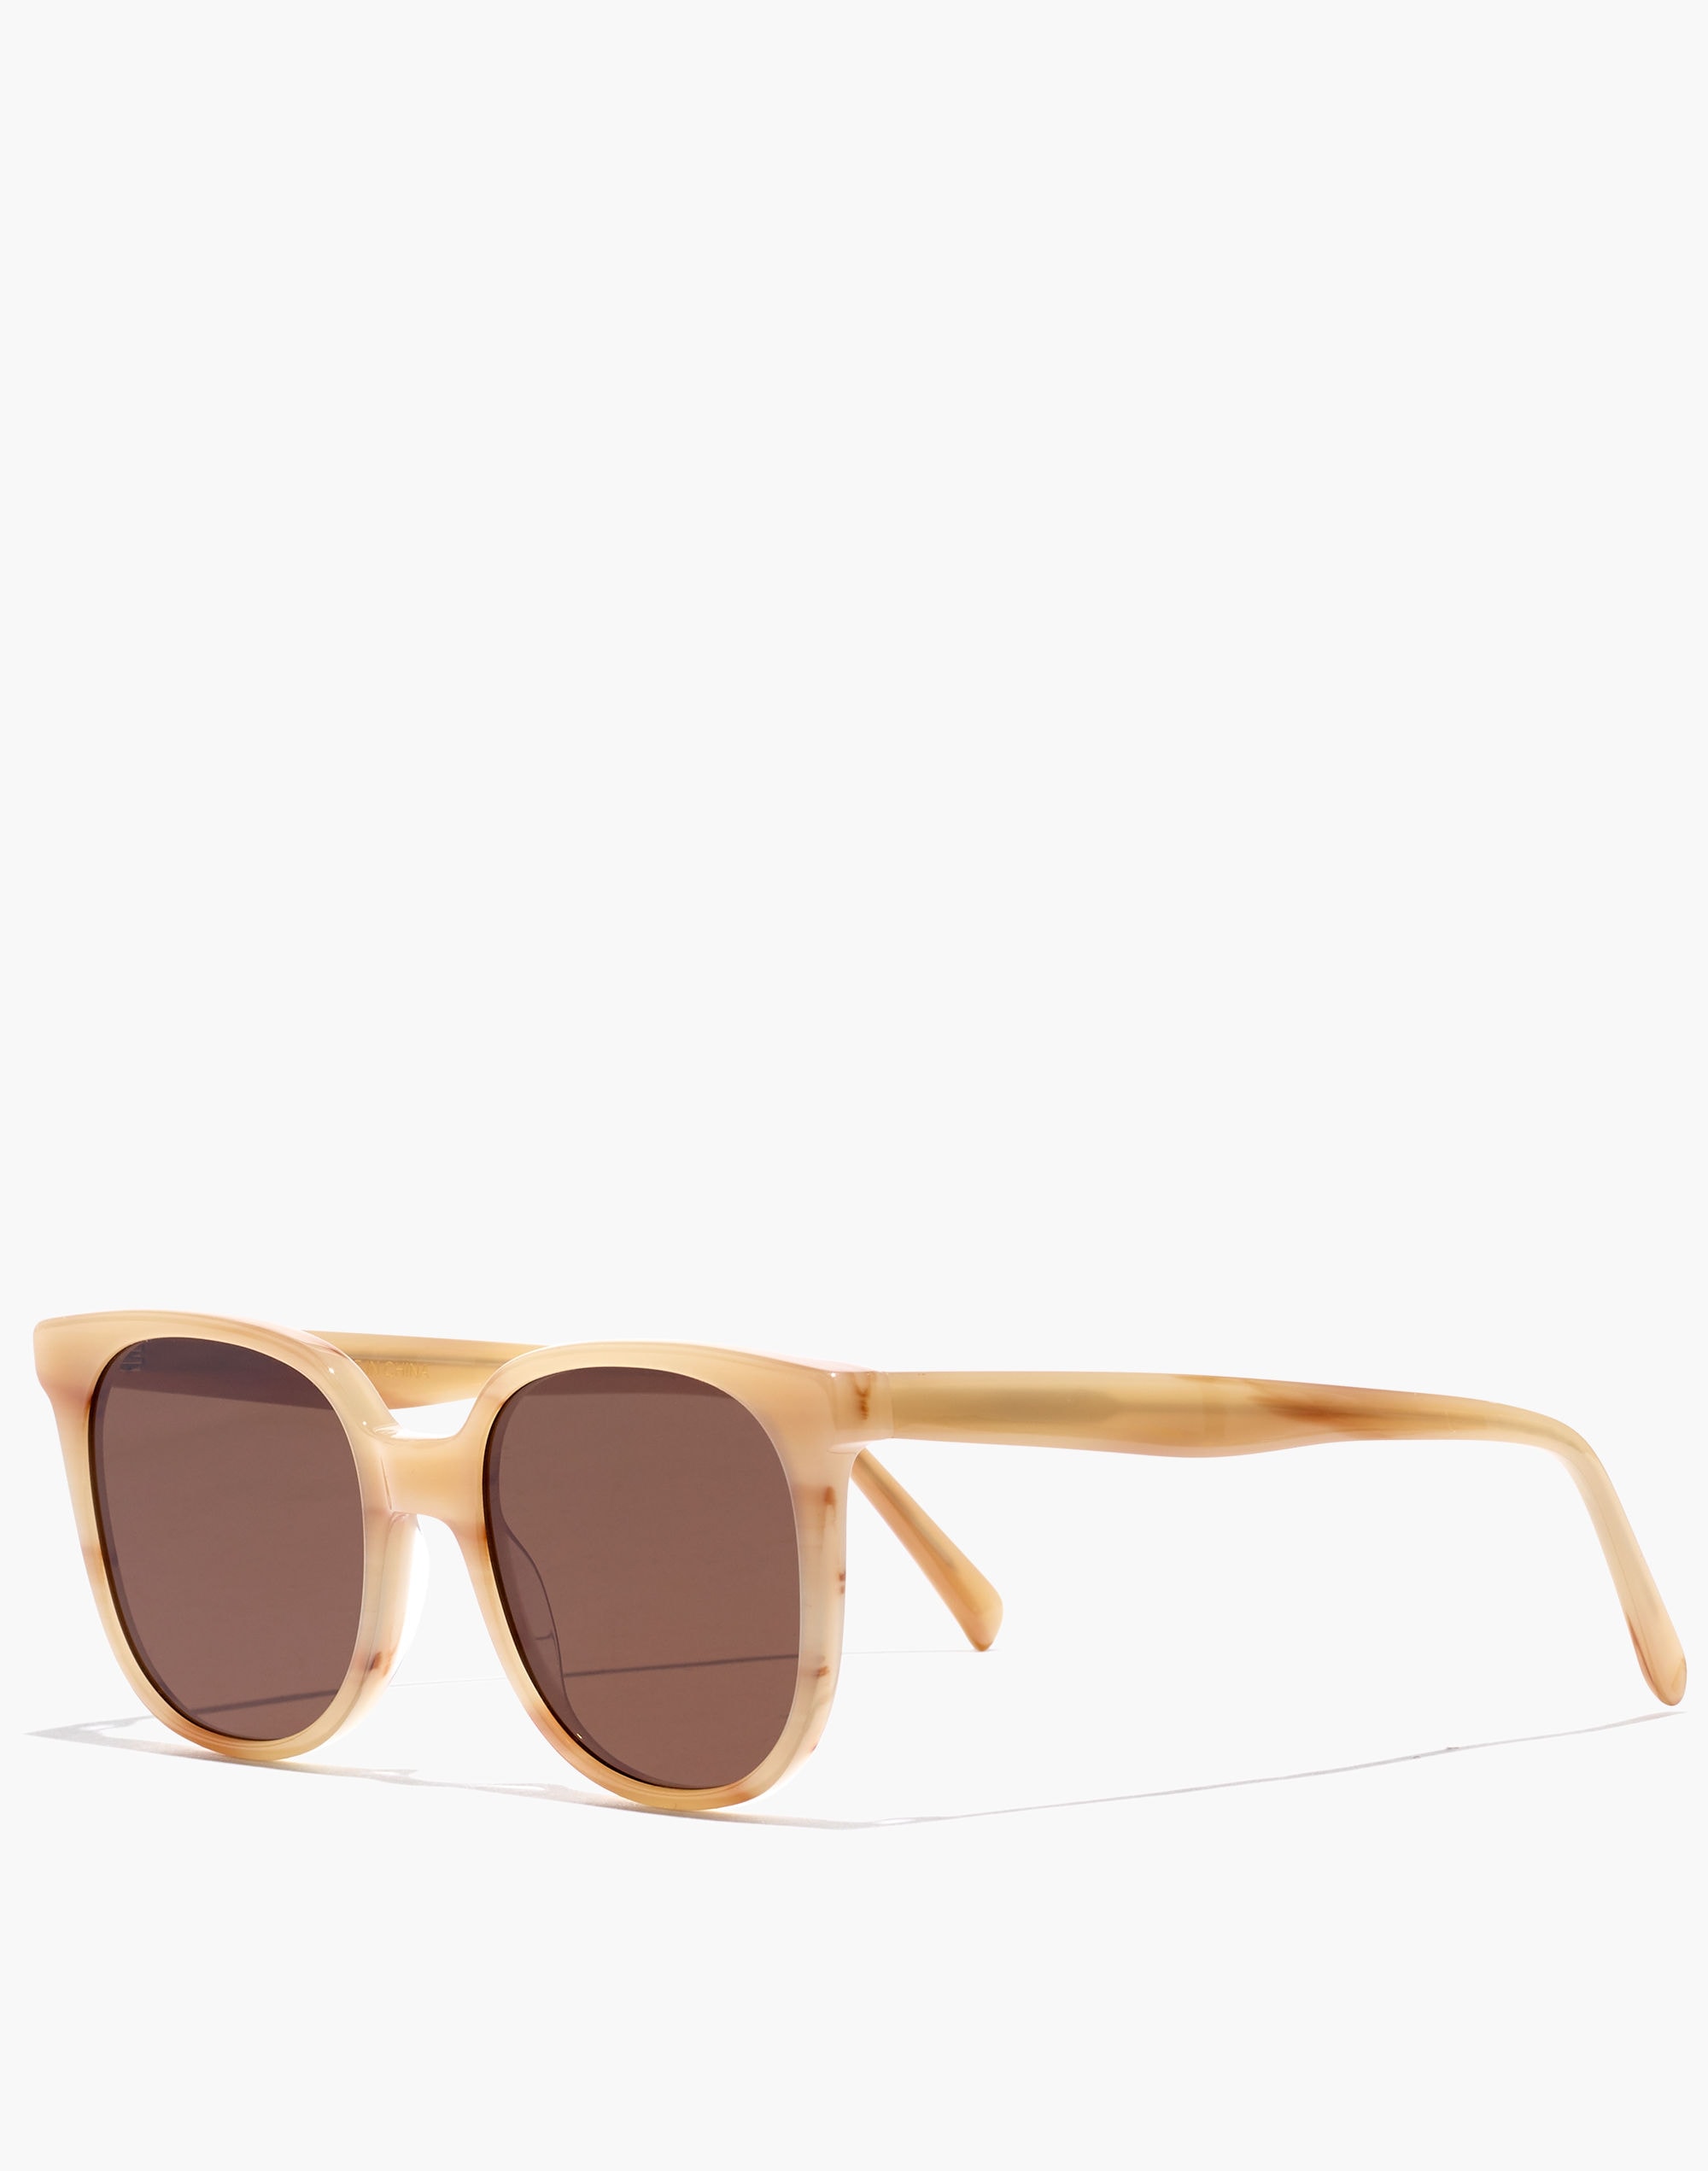 Holwood Sunglasses